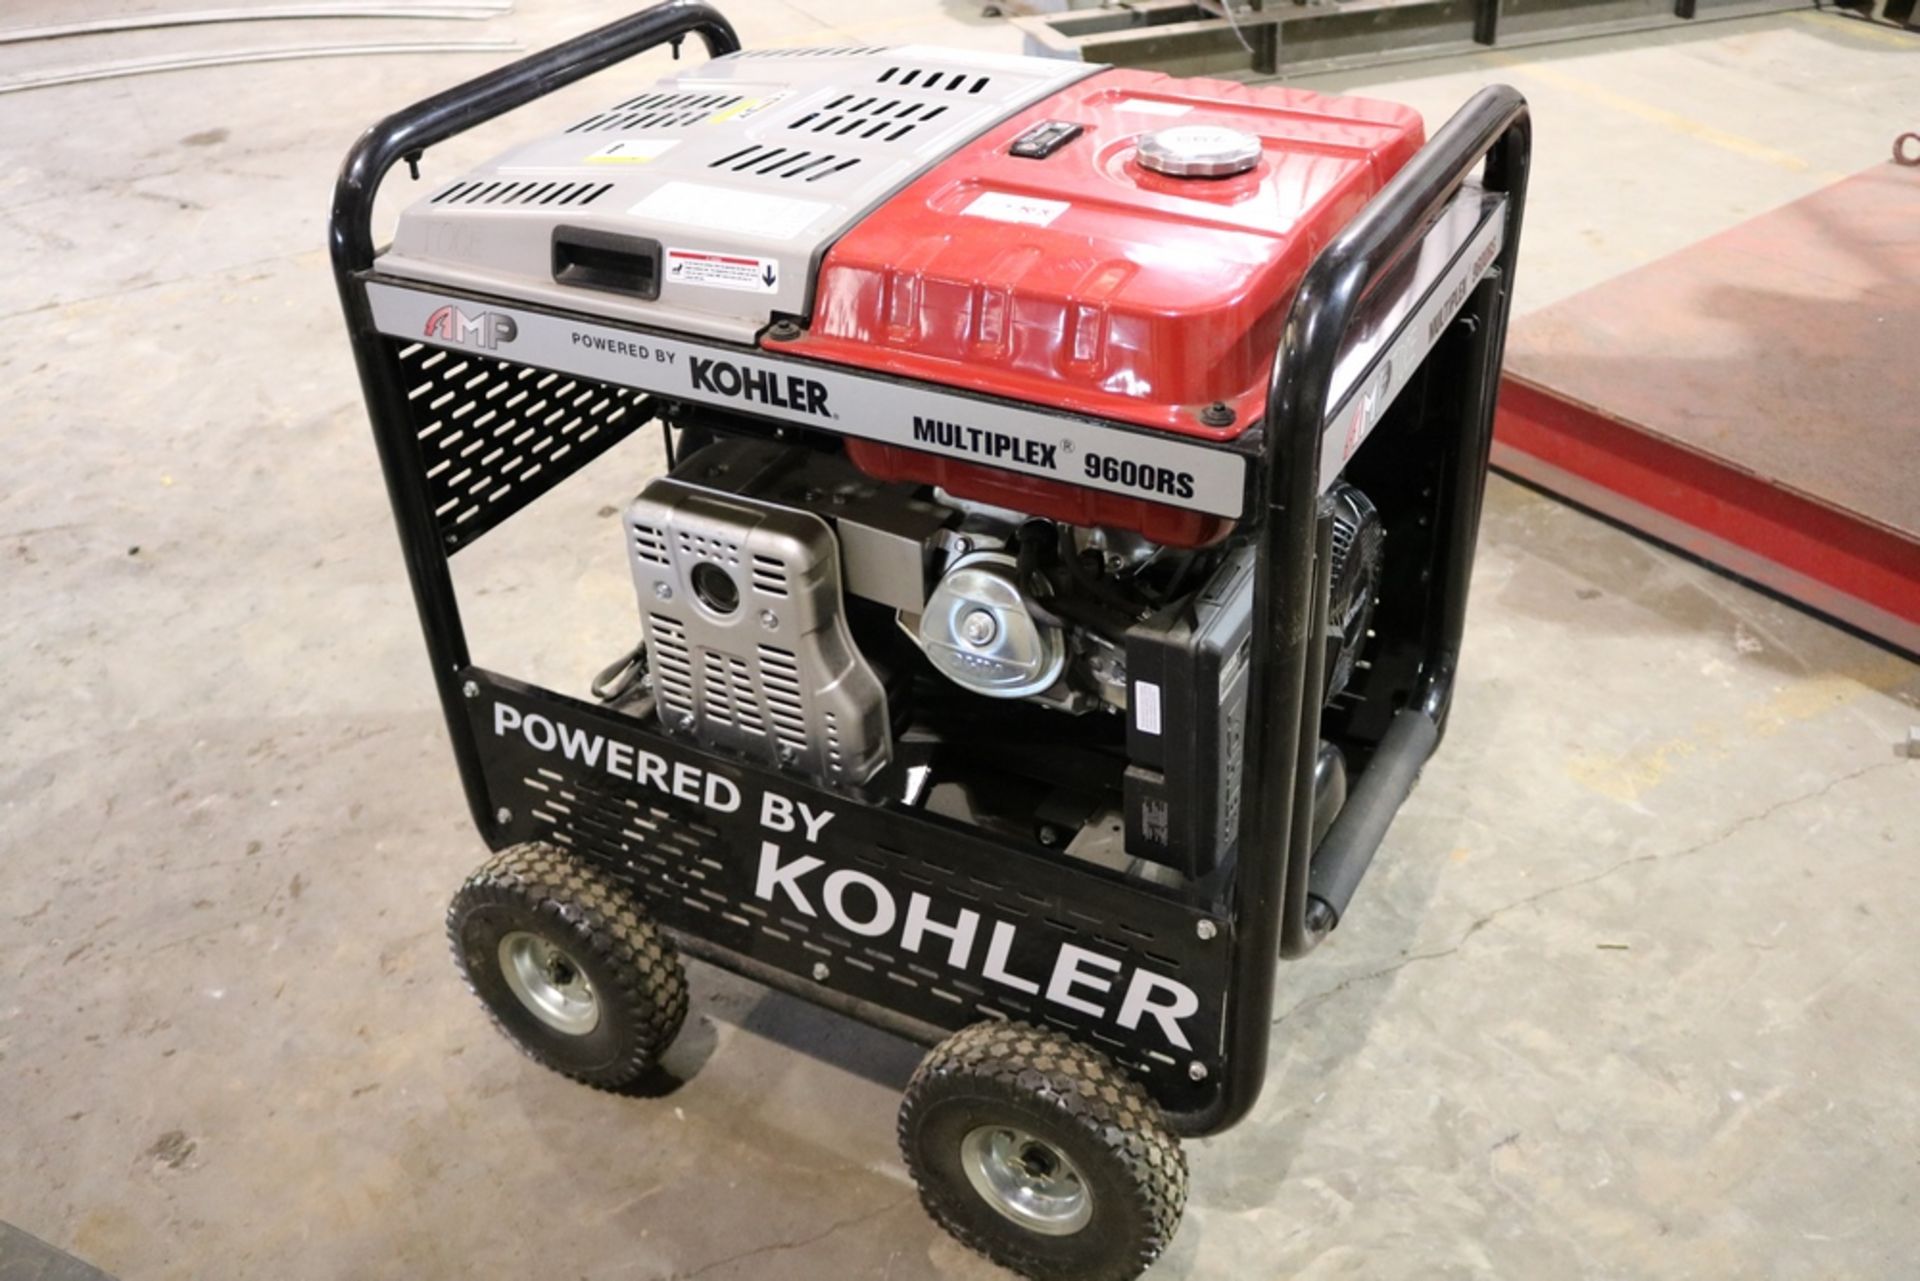 Kohler Multiplex 9600RS Air Compressor,